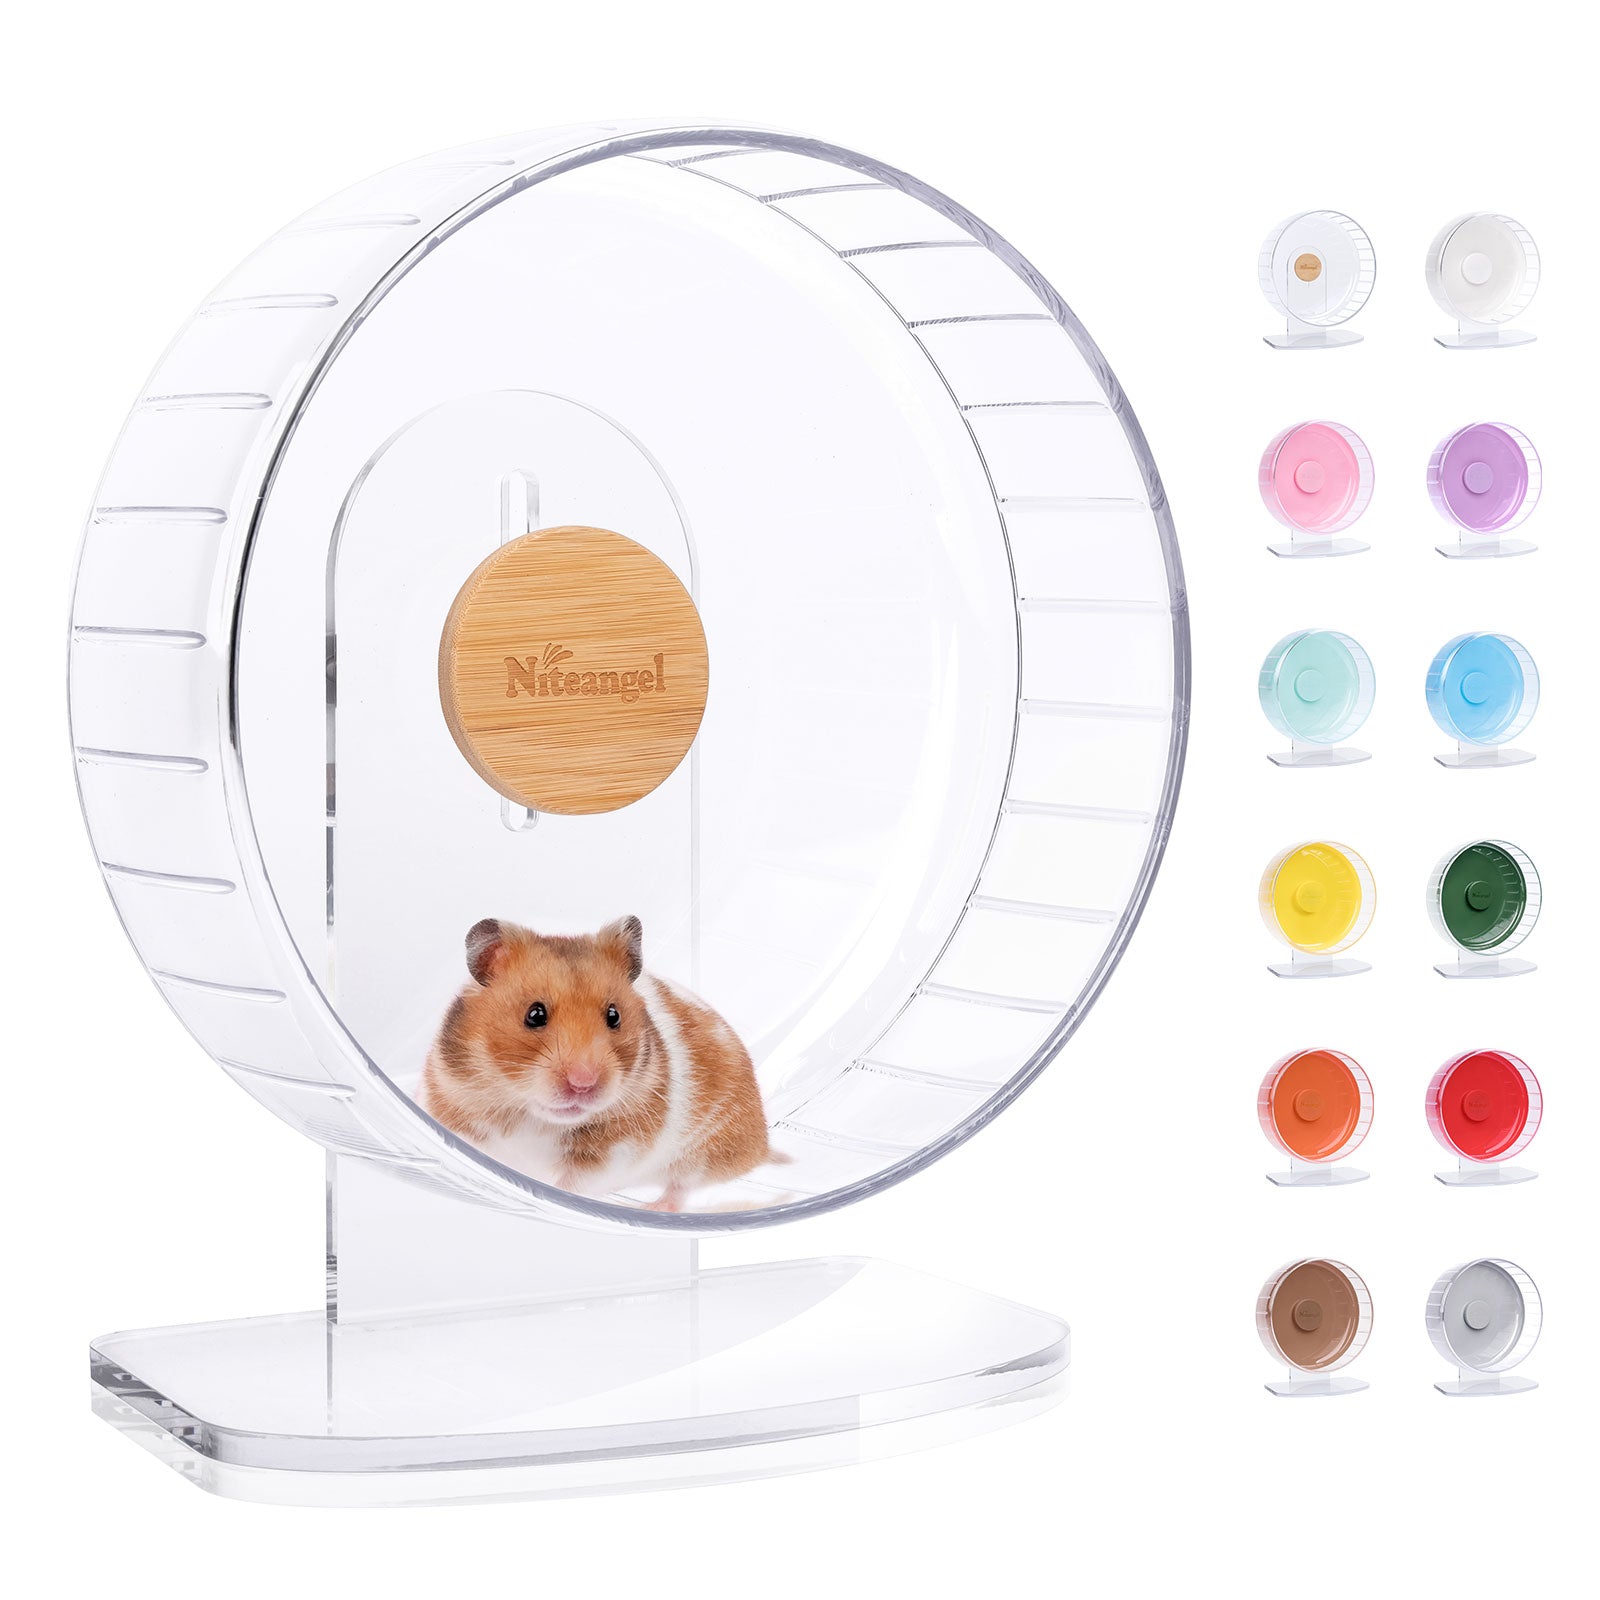 Niteangel Super-Silent Hamster Exercise Wheels - Niteangel Pet CA